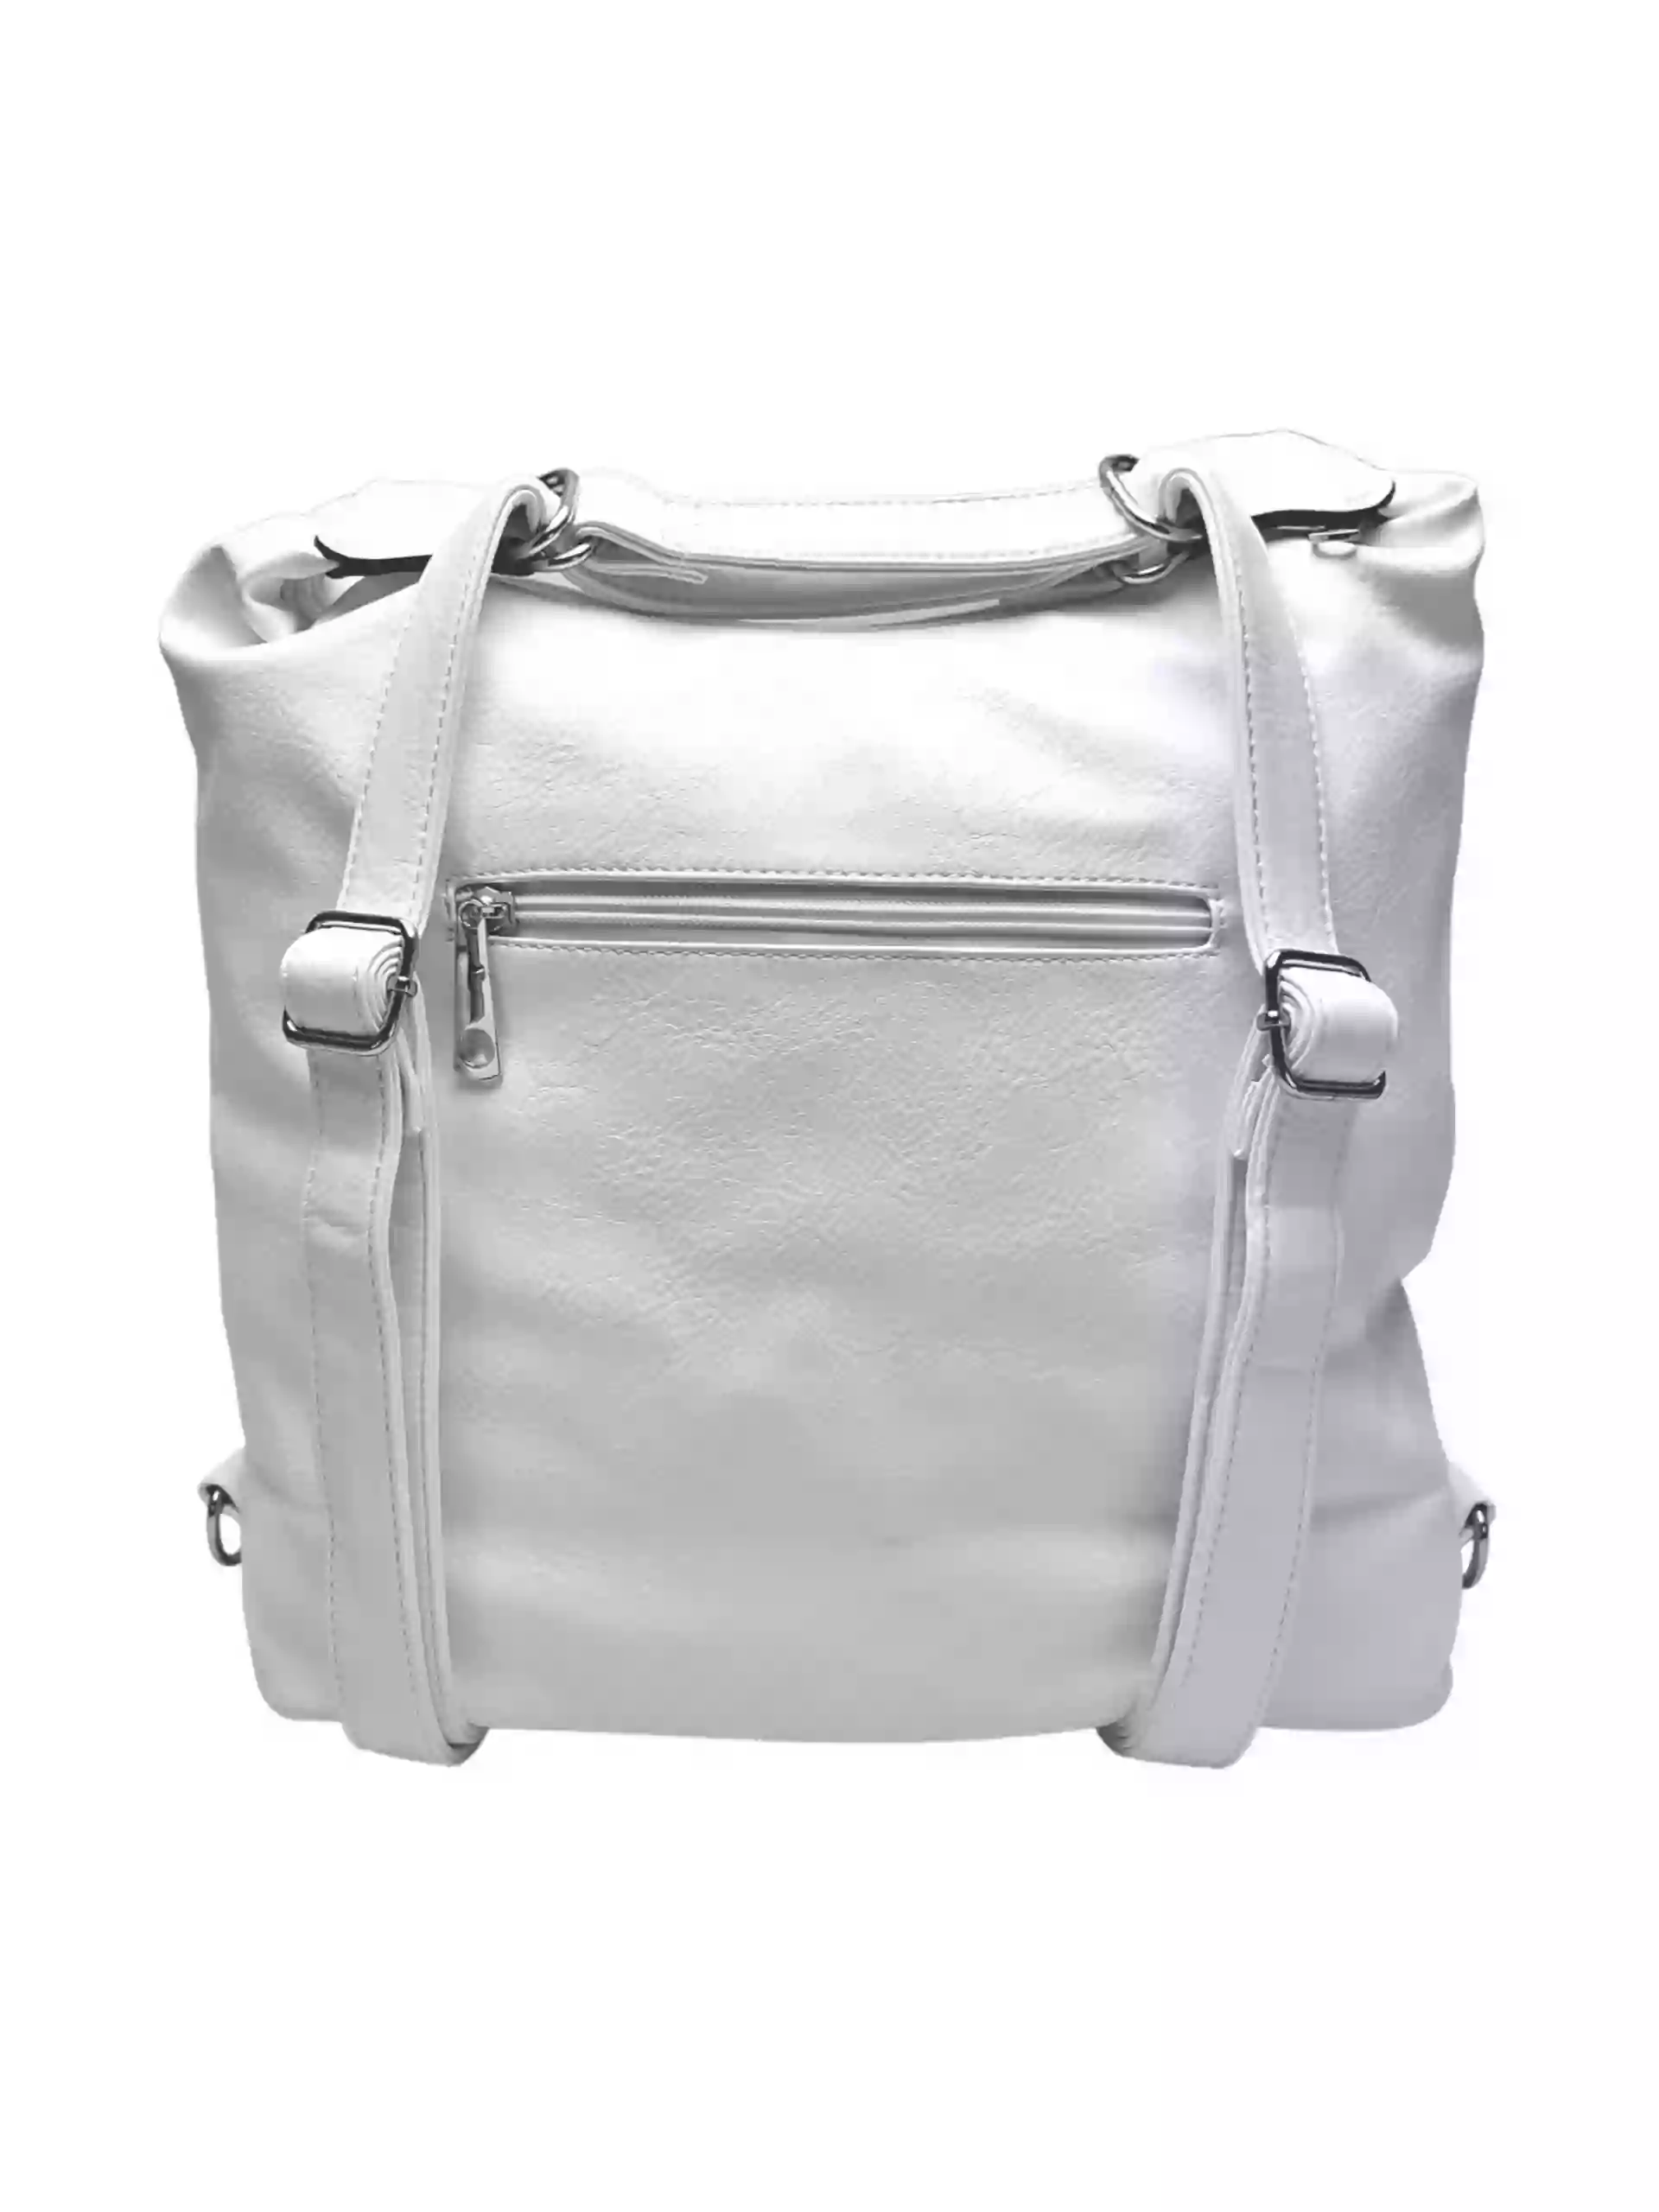 Velký bílý kabelko-batoh z eko kůže, Tapple, H18077, zadní strana kabelko-batohu 2v1 s popruhy